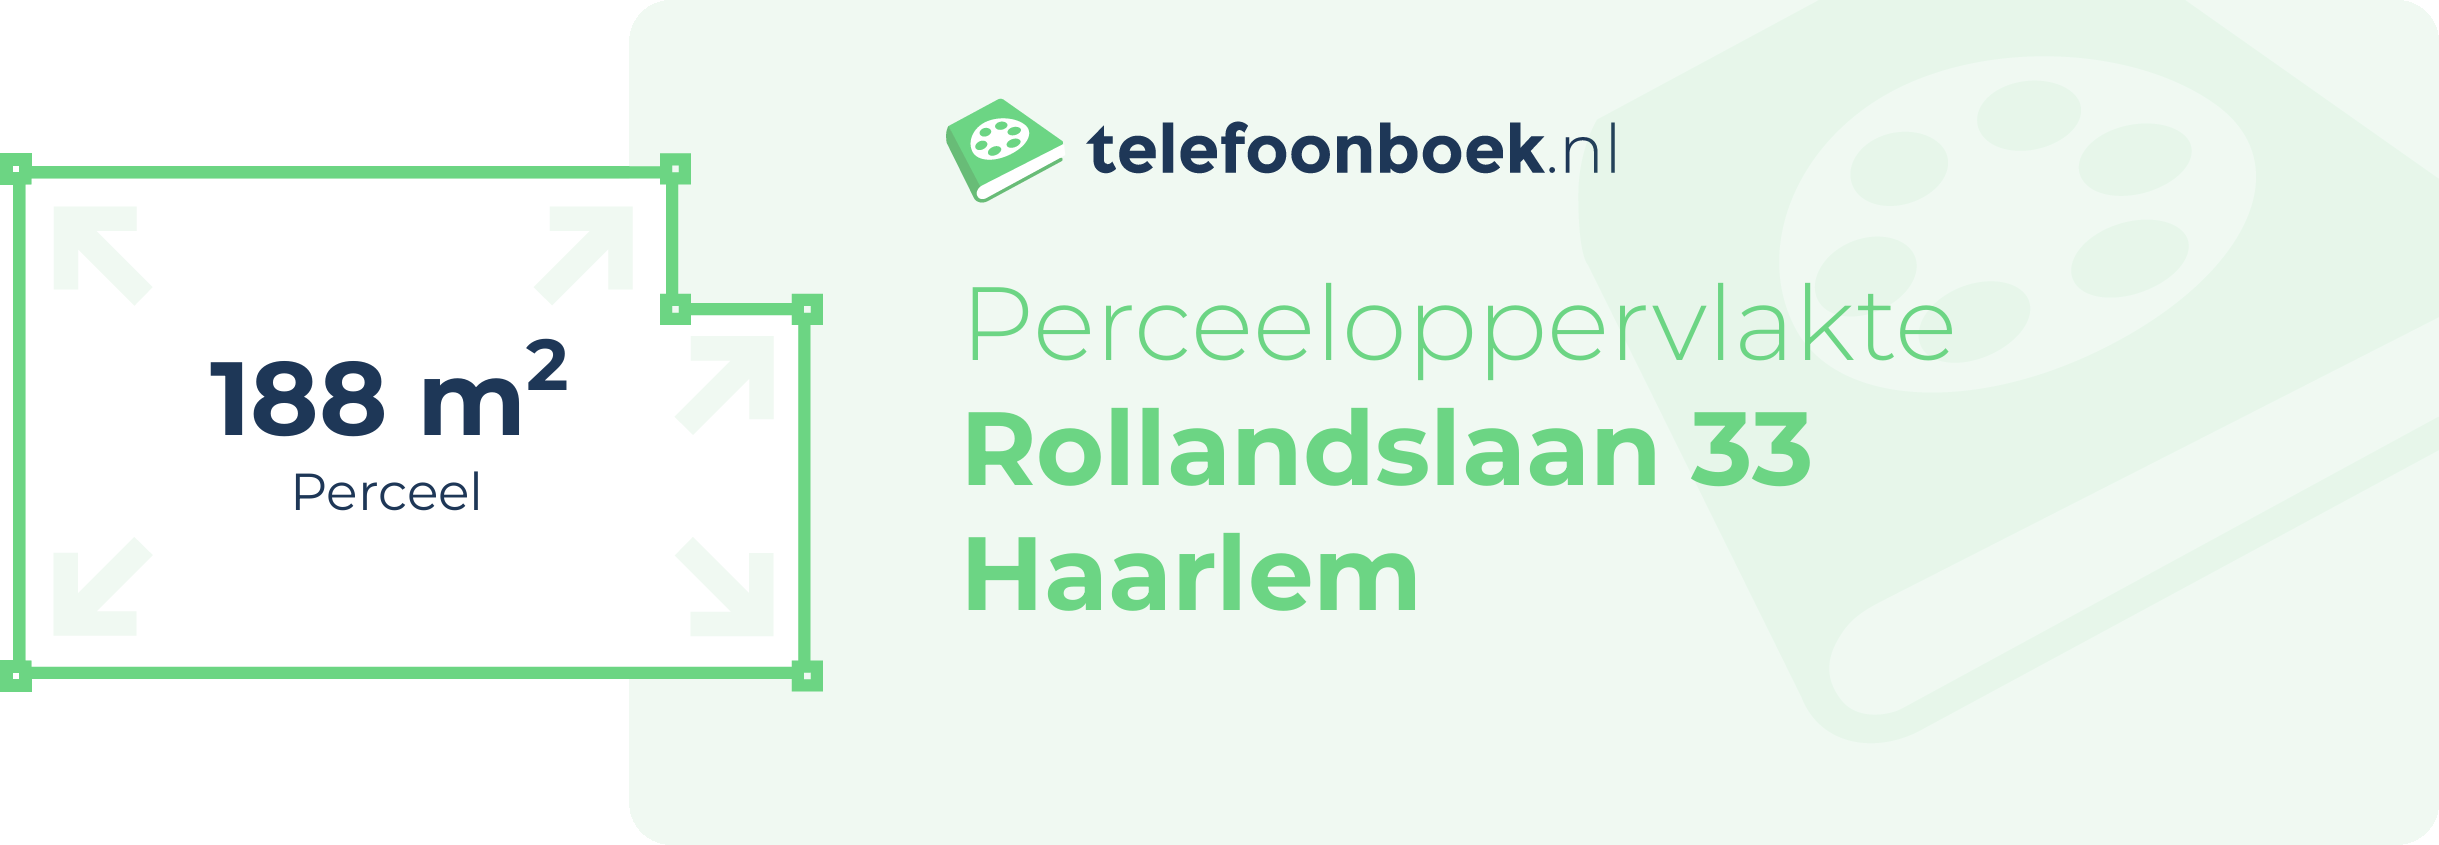 Perceeloppervlakte Rollandslaan 33 Haarlem